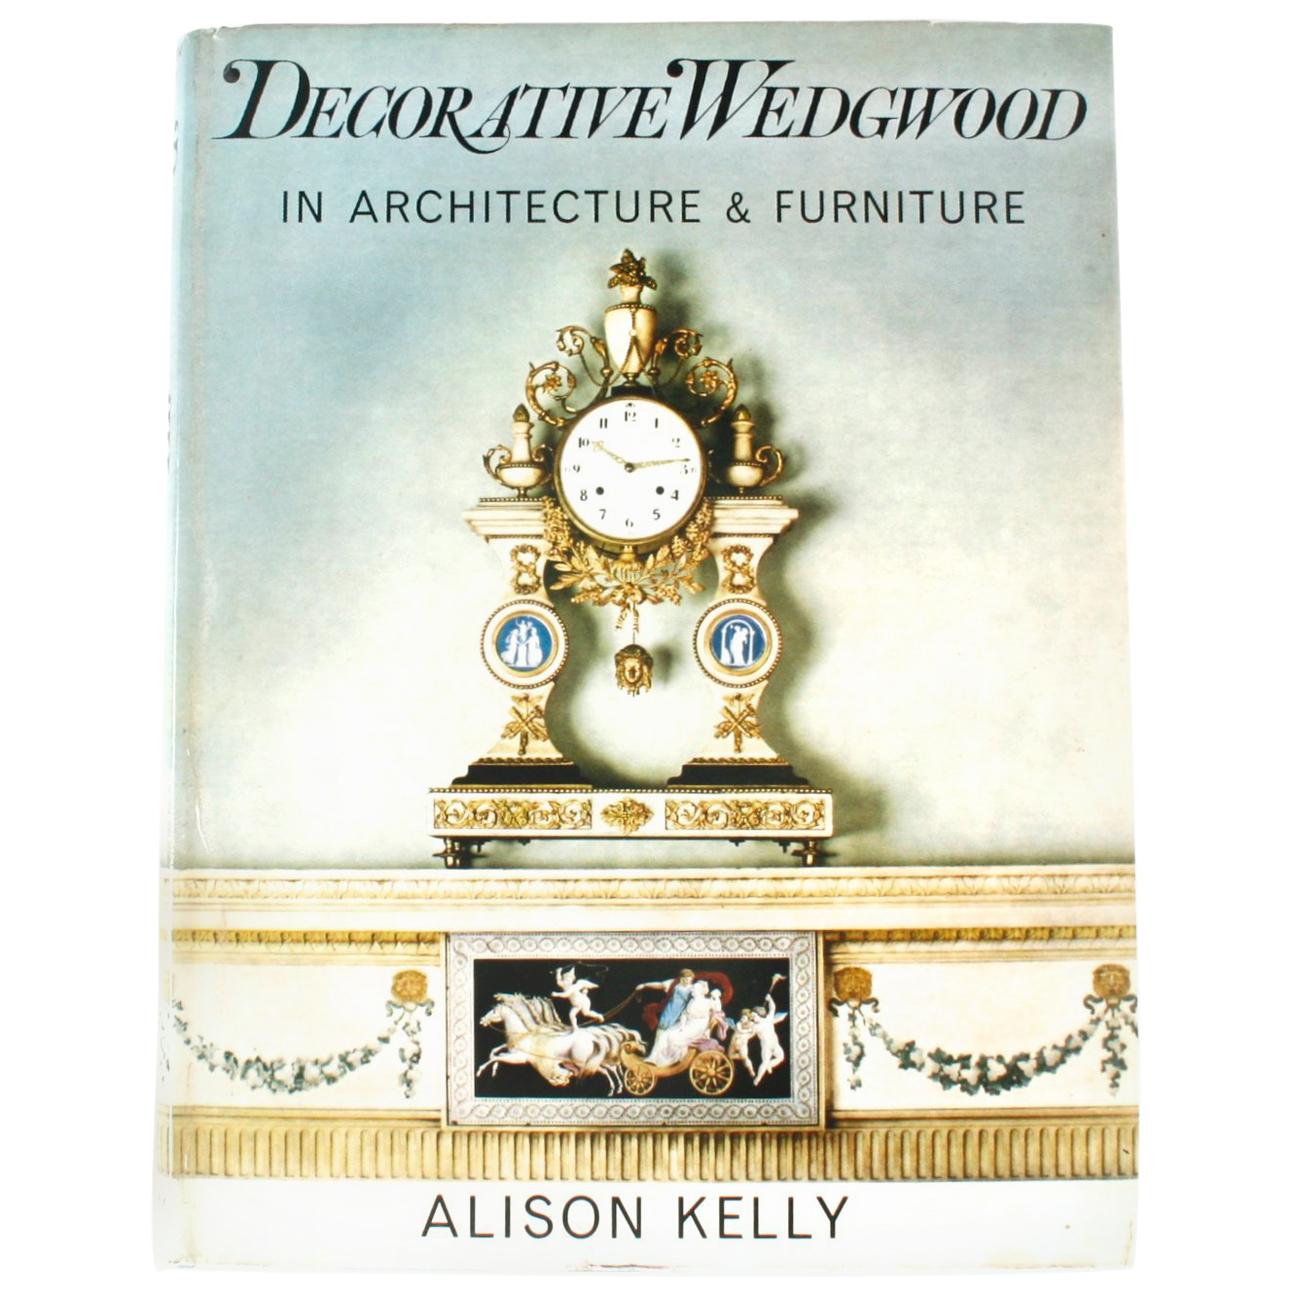 Dekoratives Wedgwood von Alison Kelly, signiert und beschriftet, 1. Auflage